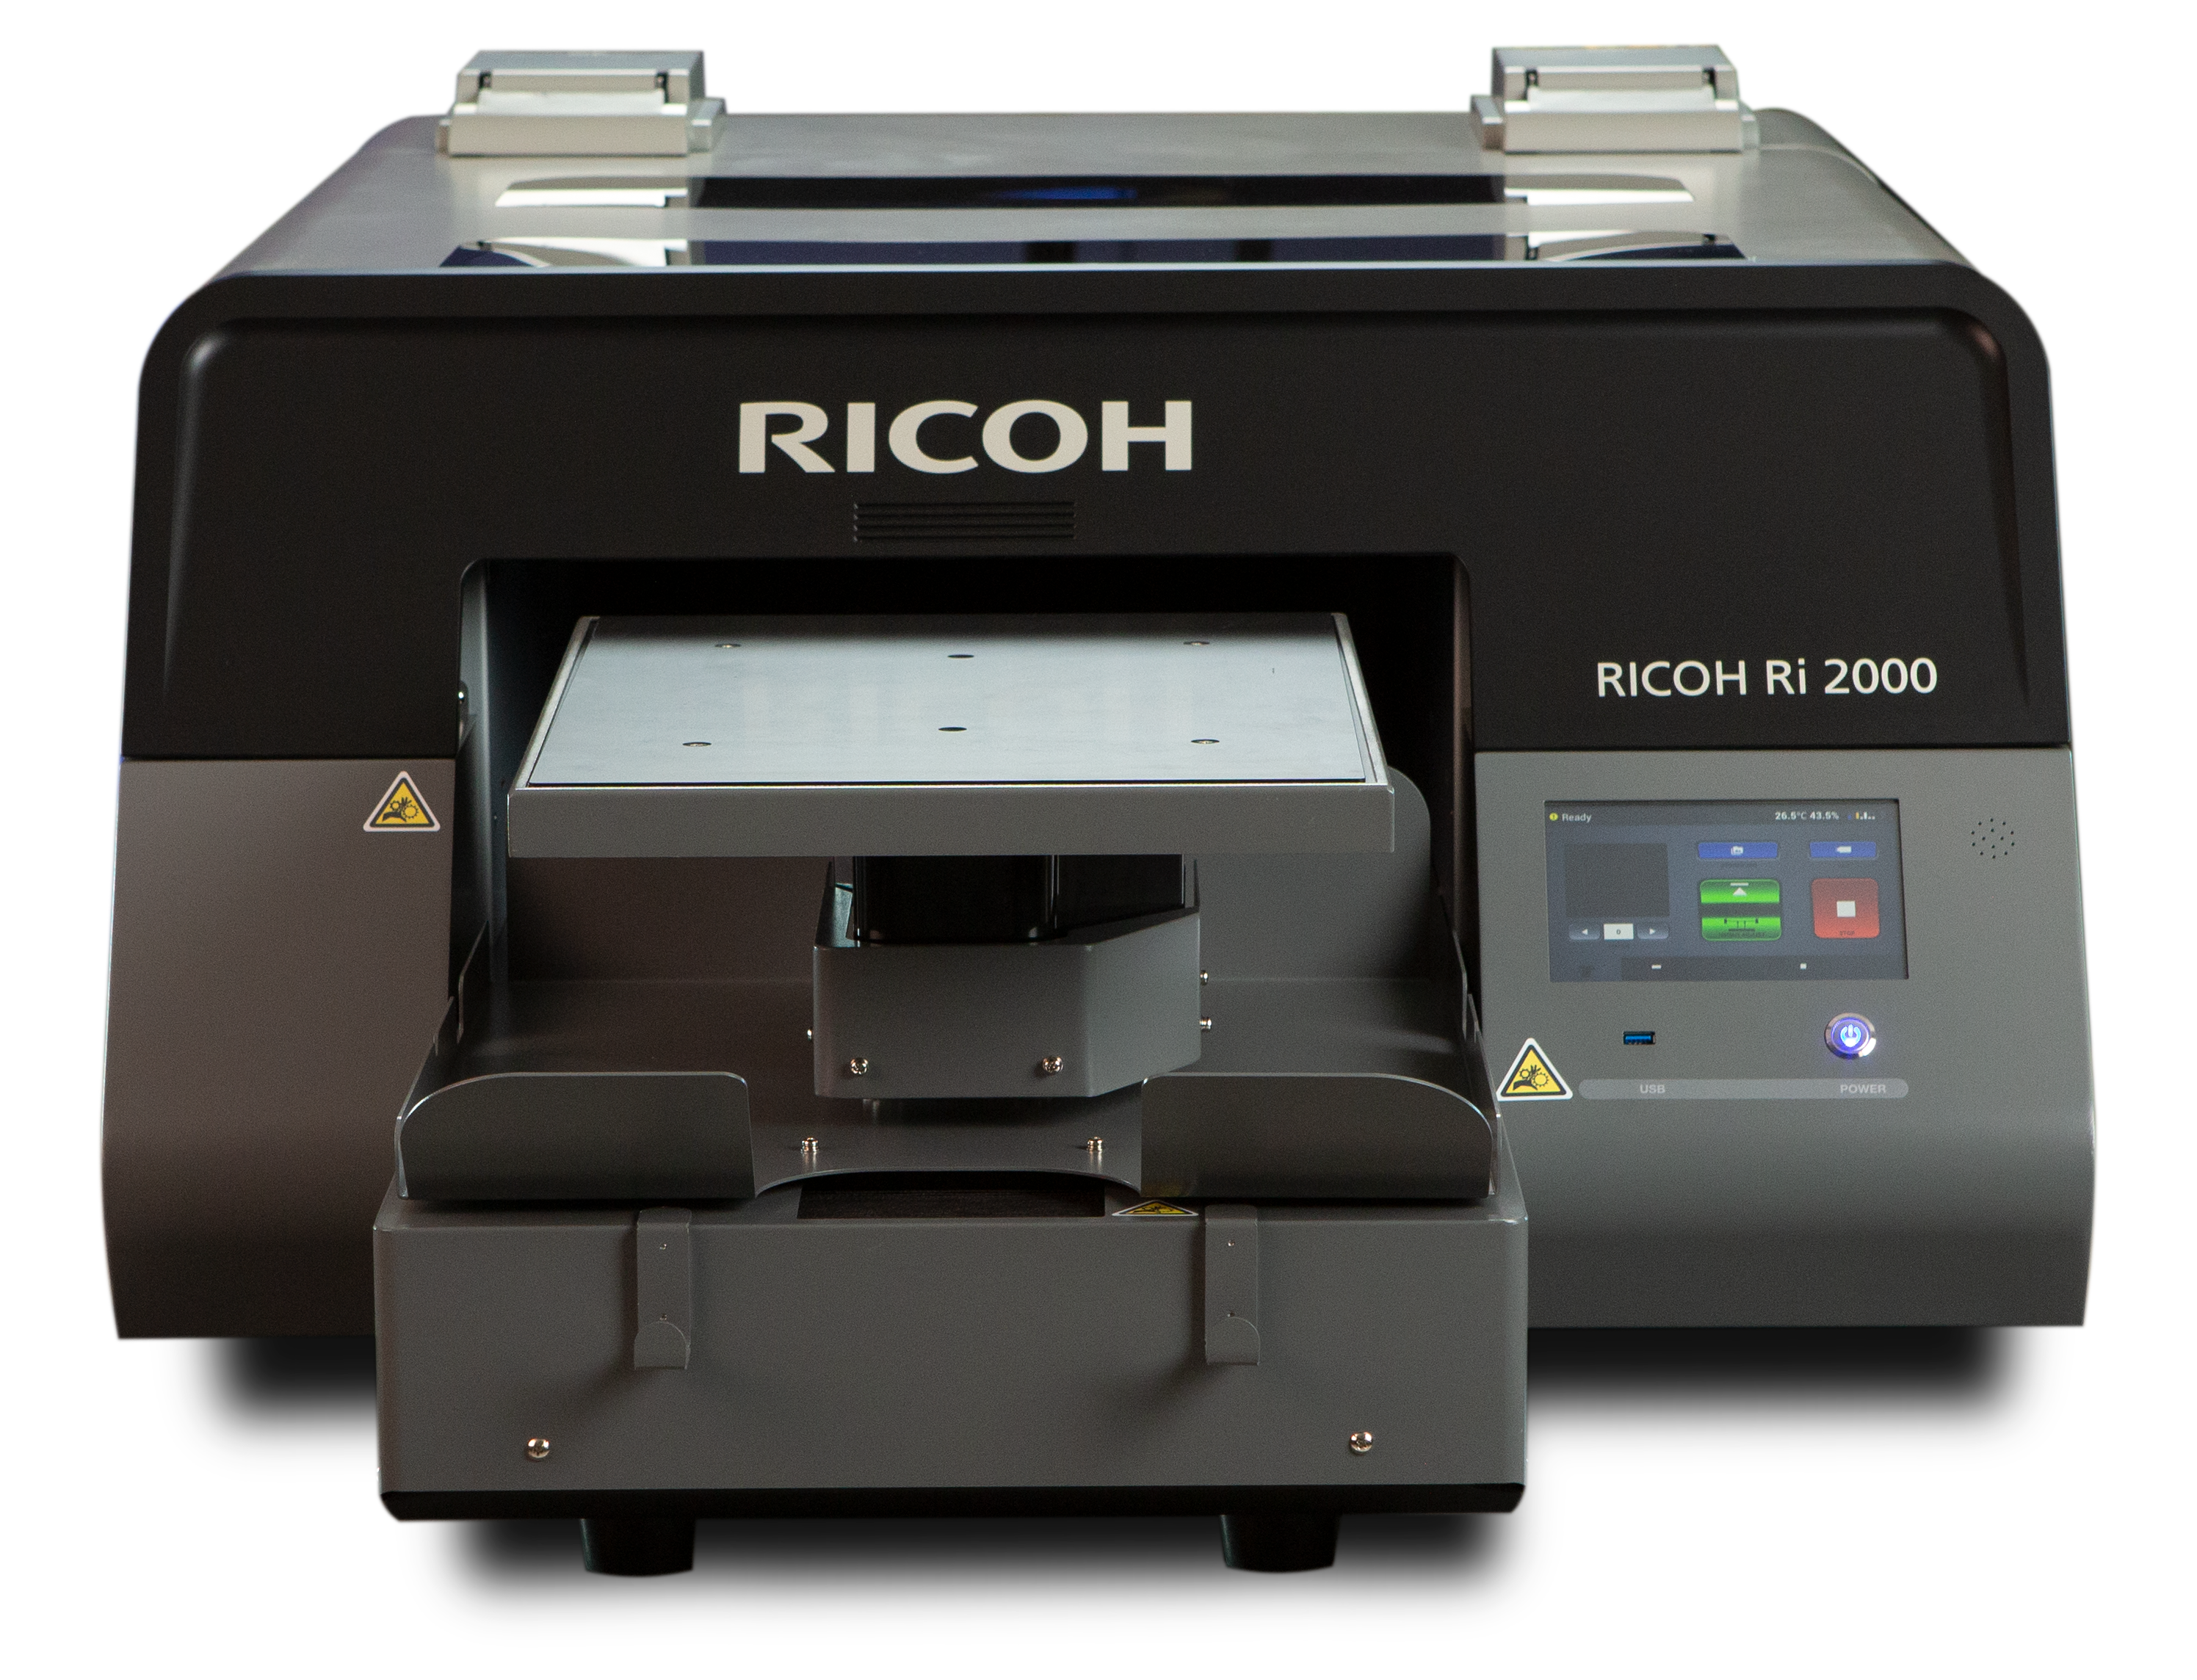 La Ri 2000 se posiciona como el equipo más productivo de la gama DTG de Ricoh